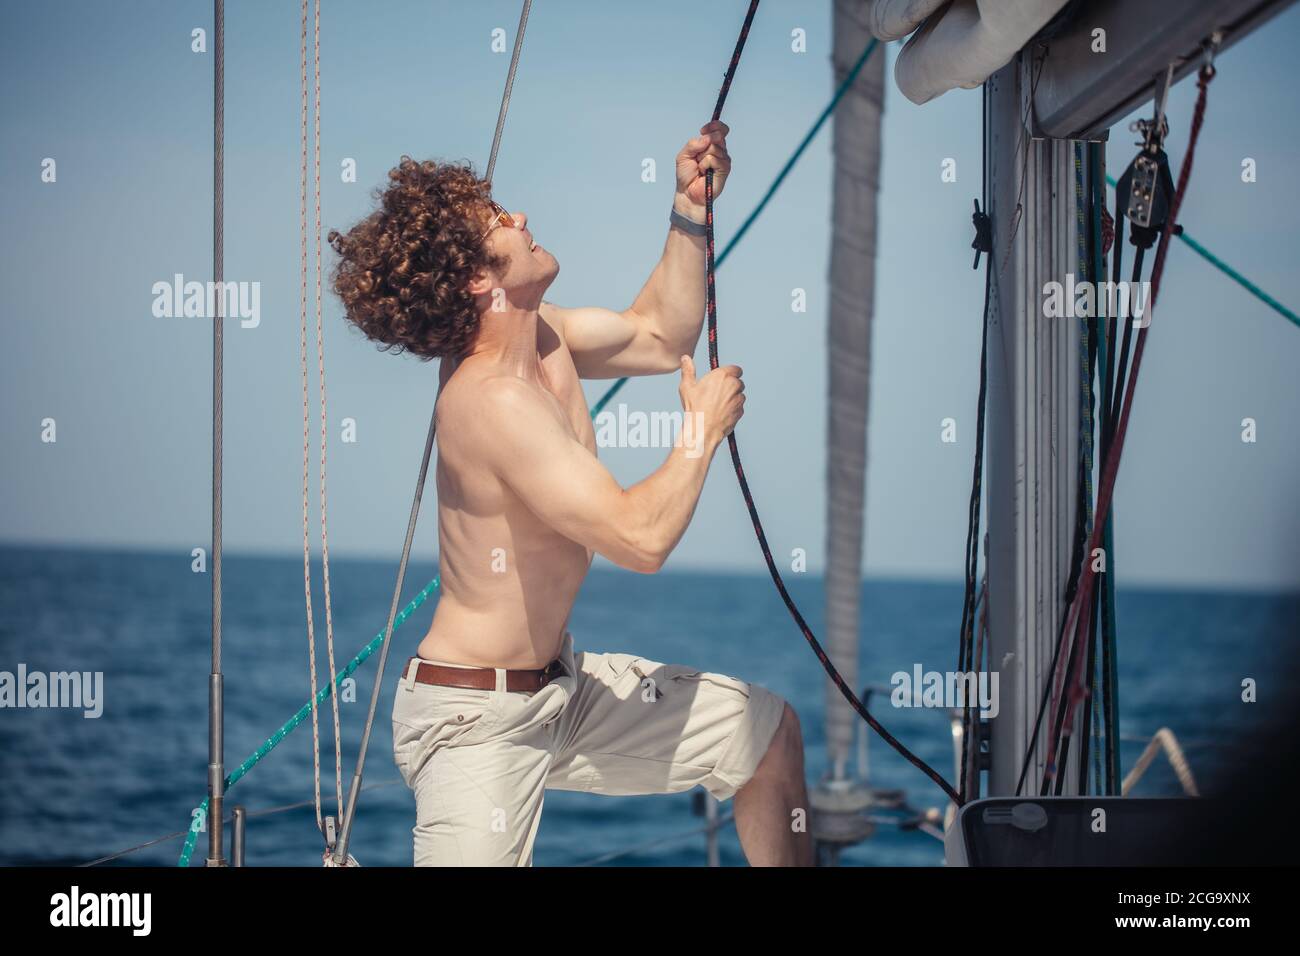 Jeune hadsome hippster marin homme avec des poils flous voile un bateau pour emmener ses amis à un voyage en mer, tirant la corde Banque D'Images